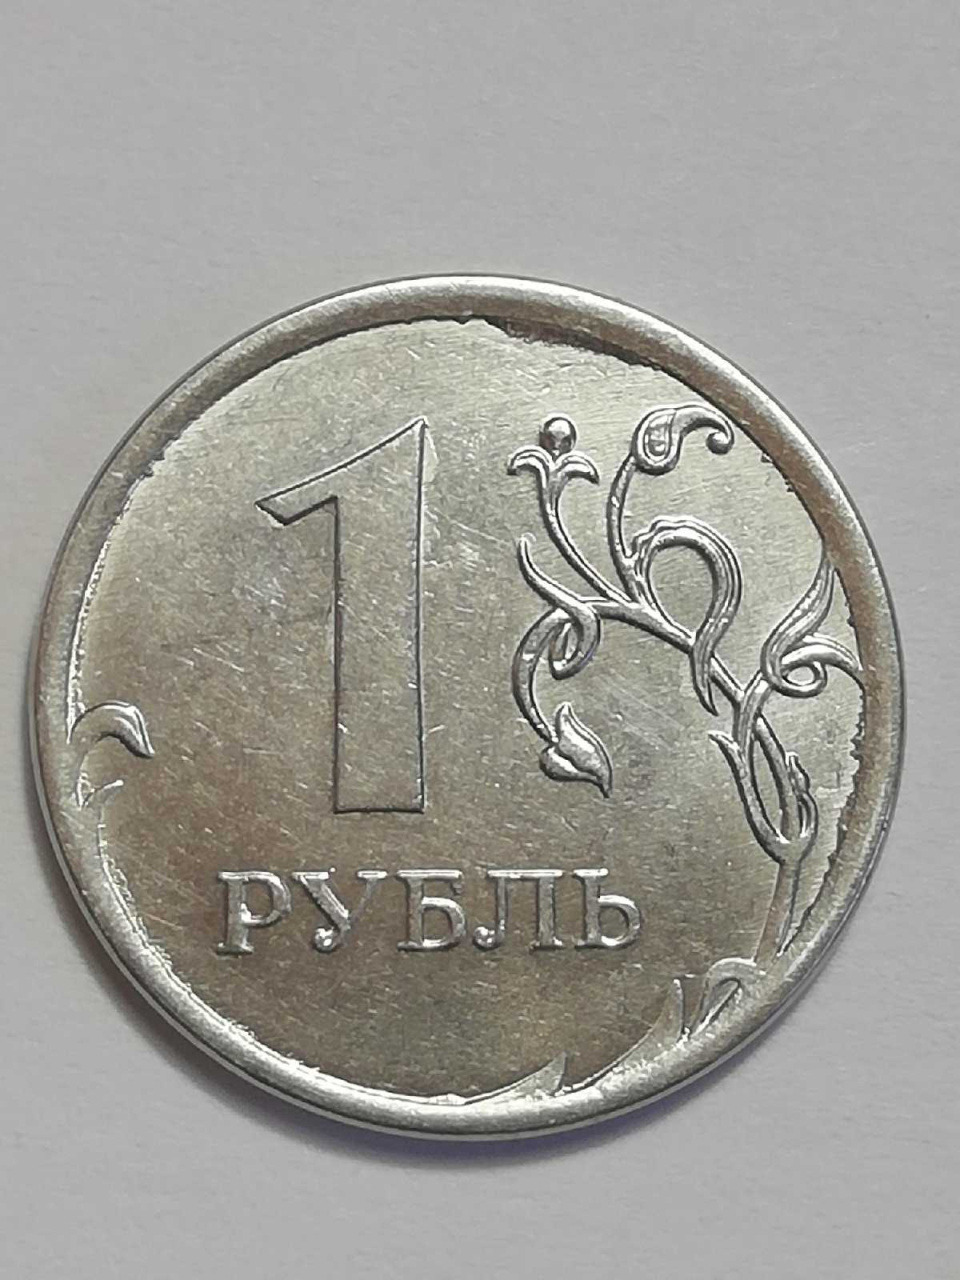 5 рублей 13 года. Покажи в городе монетку.